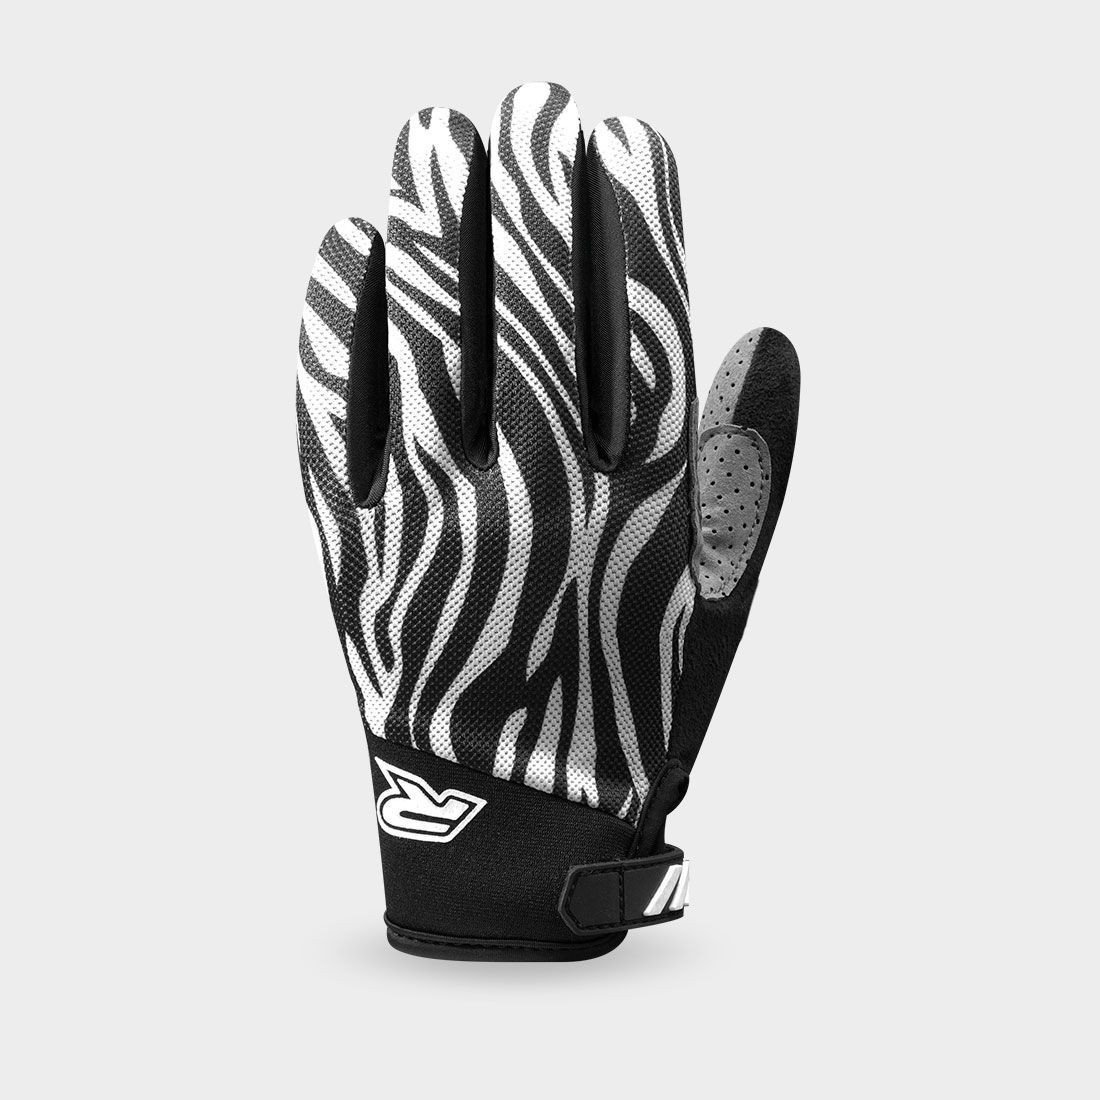 RACER GP STYLE rukavice černá/bílá 3XL